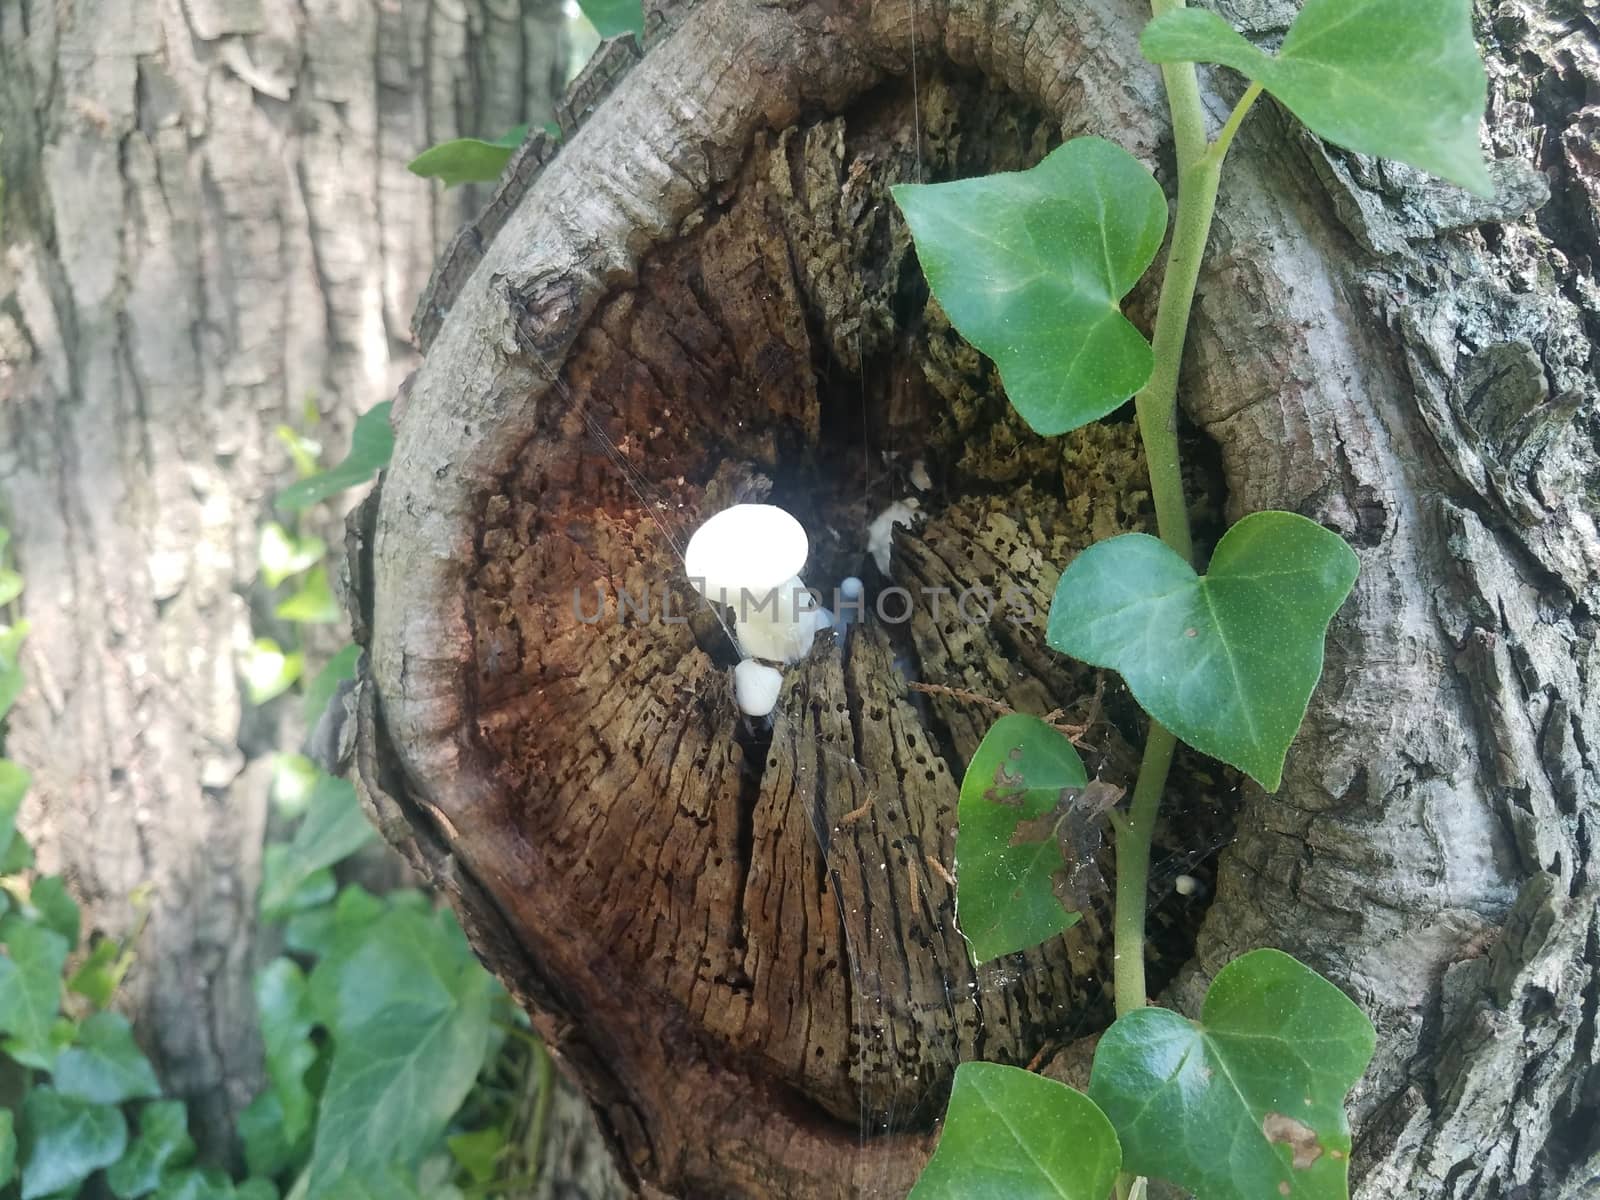 white mushroom or fungus in tree trunk by stockphotofan1